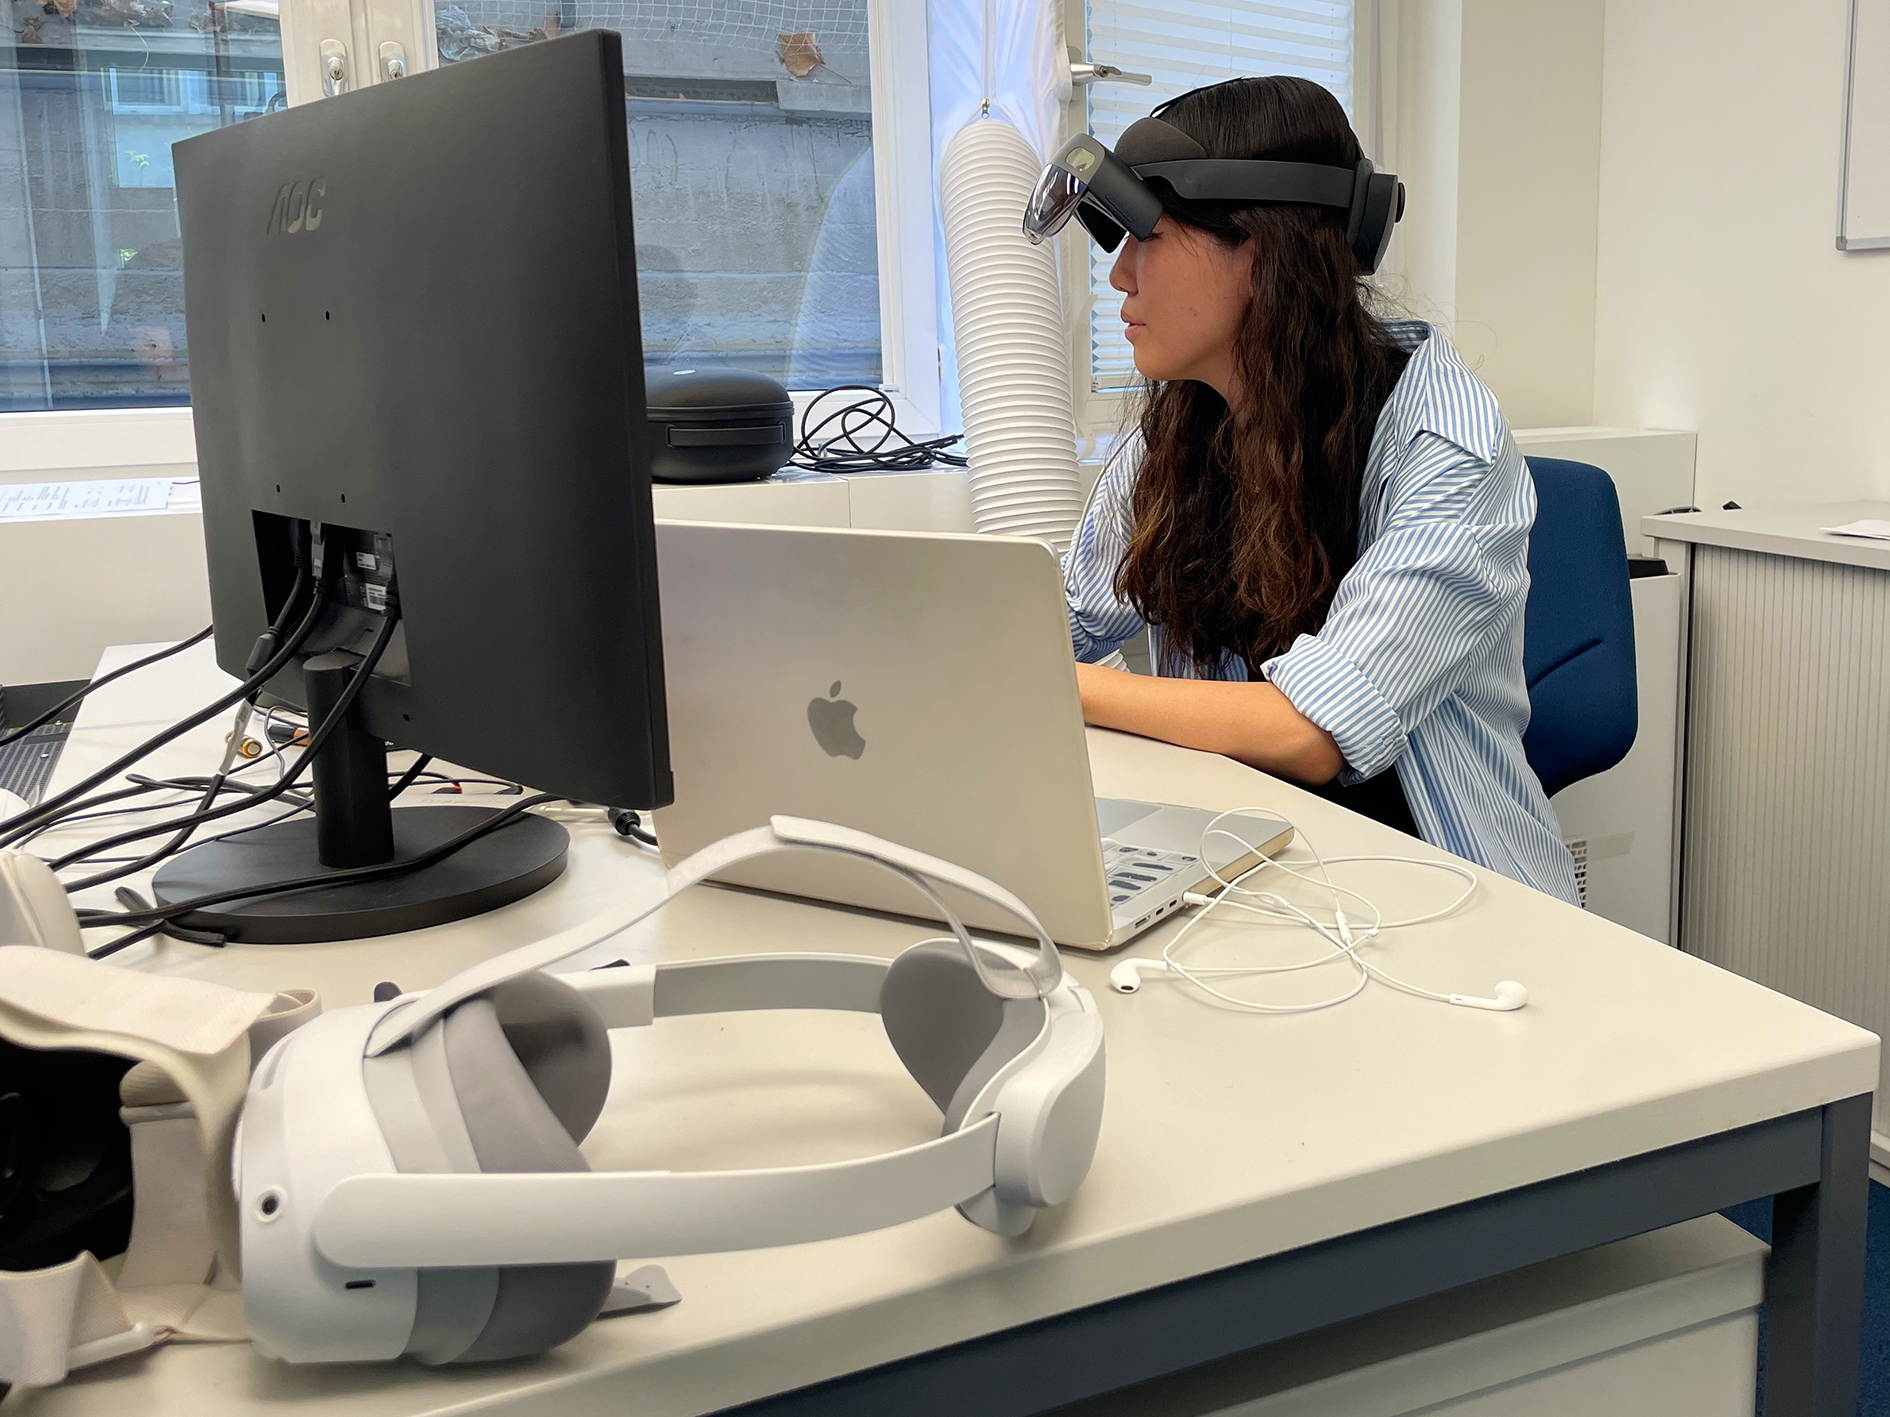 Portia sitzt an ihrem Schreibtisch und trägt eine AR-Brille. Im Vordergrund des Bildes ist eine VR-Brille zu sehen.